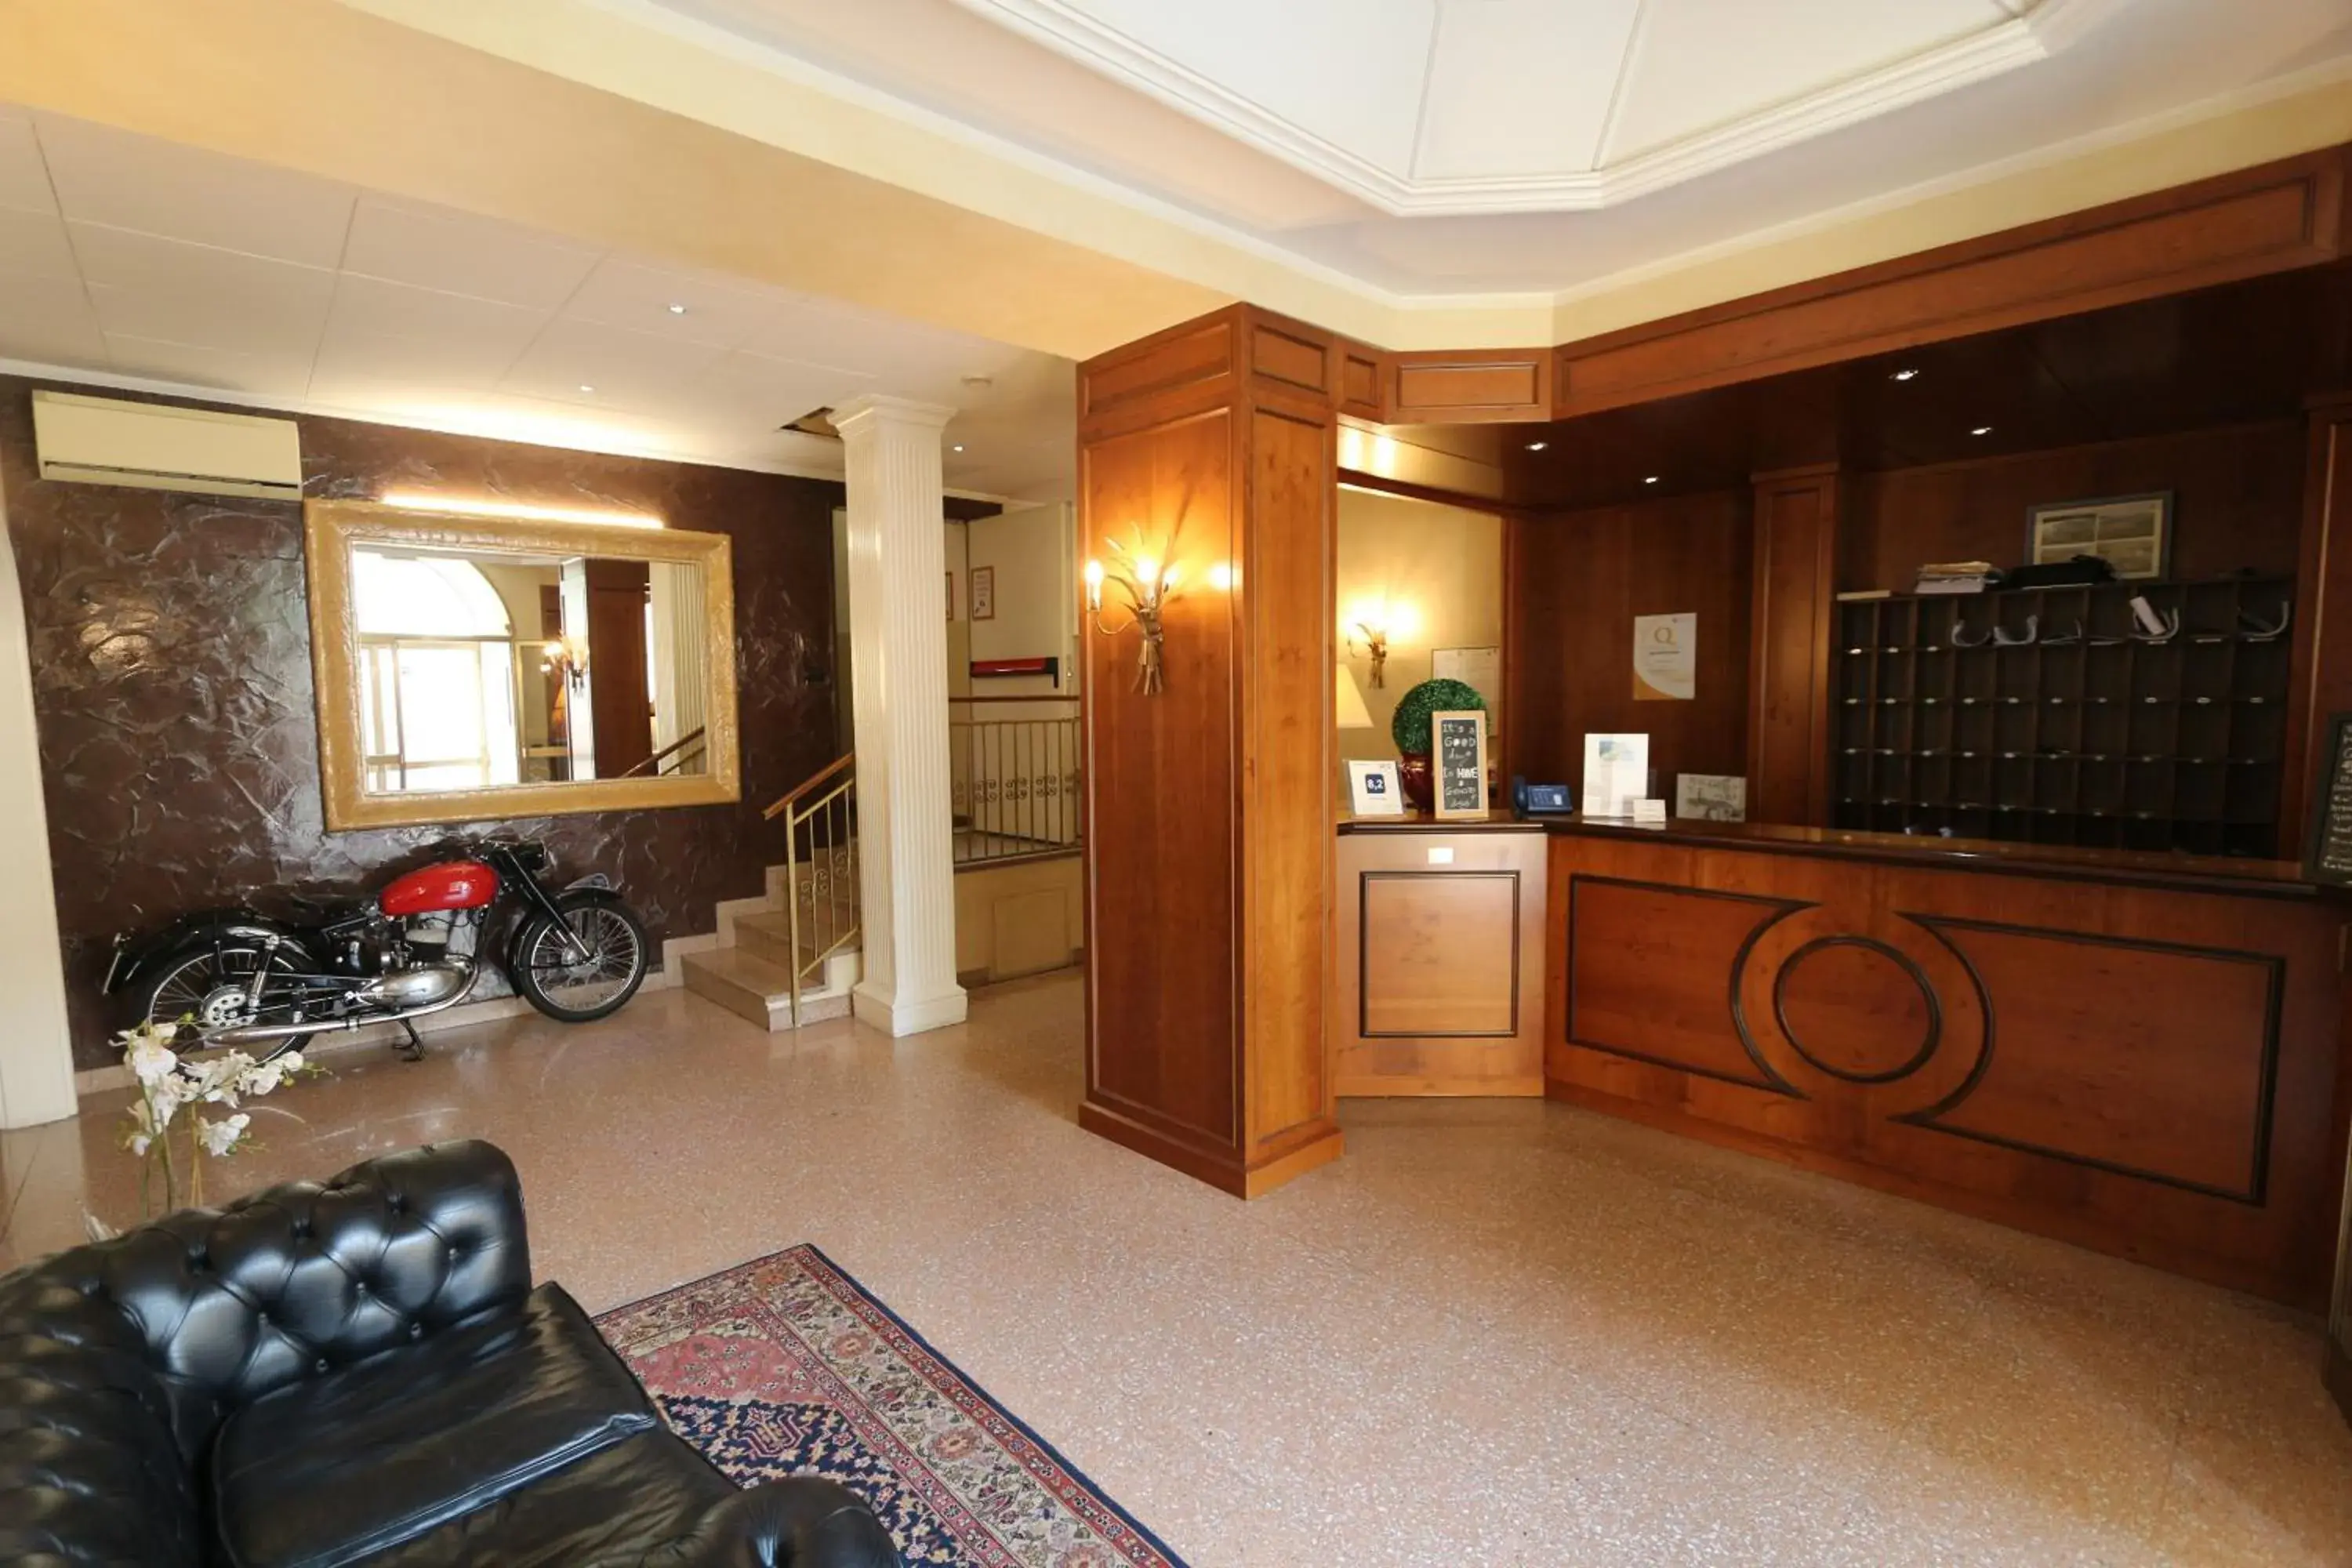 Lobby or reception, Lobby/Reception in Hotel Dei Tigli